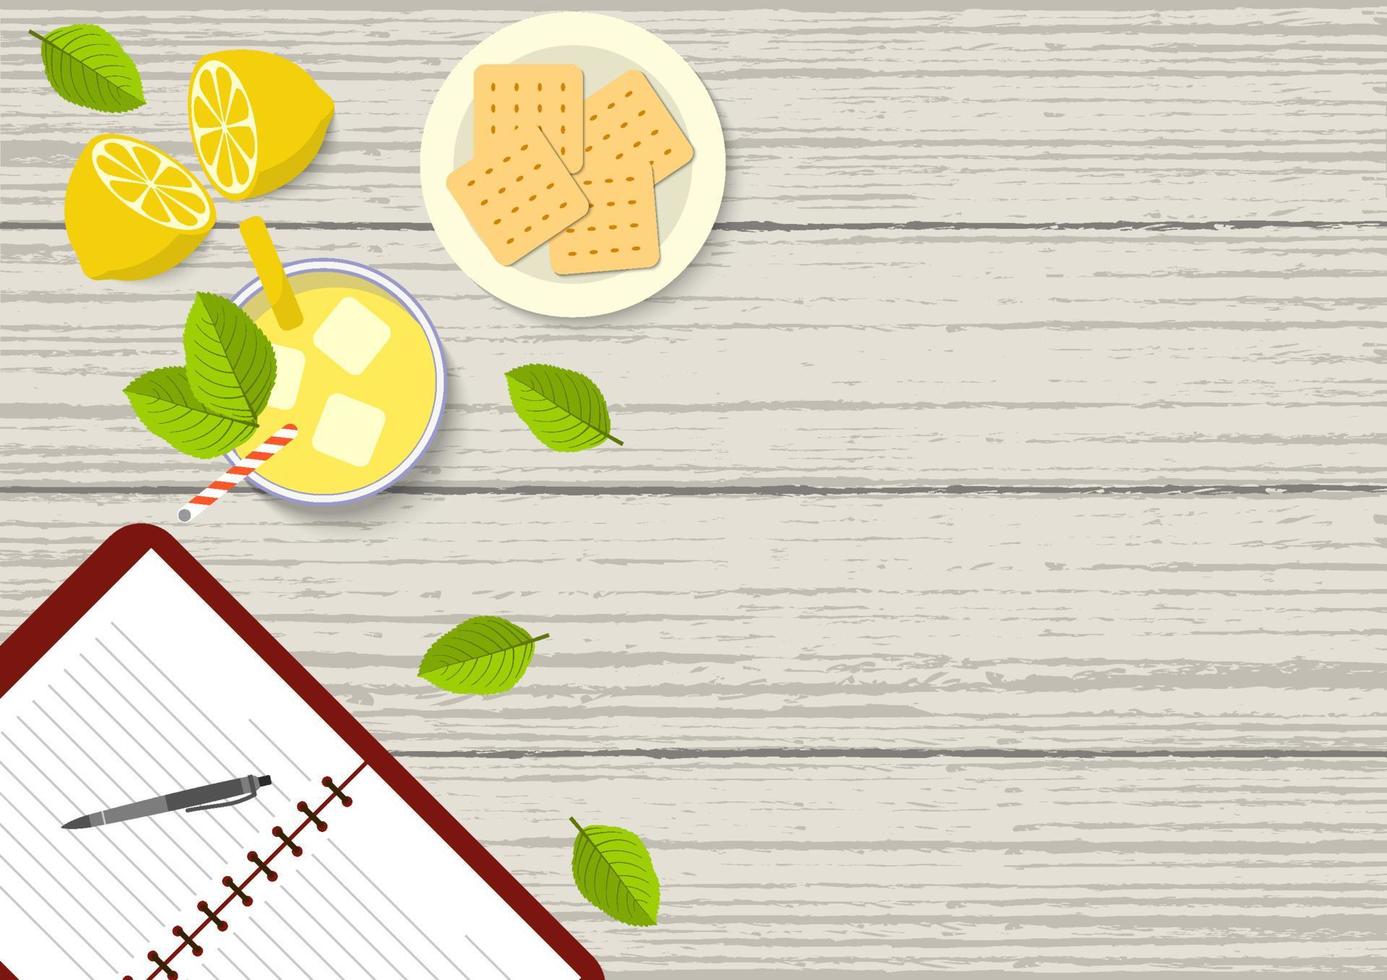 illustration vectorielle plane de table à manger en acajou d'en haut. illustration de la vue de dessus d'une table à manger avec livre ouvert, limonade, fruits au citron, biscuits craquelins et feuilles sur une table en acajou. vecteur